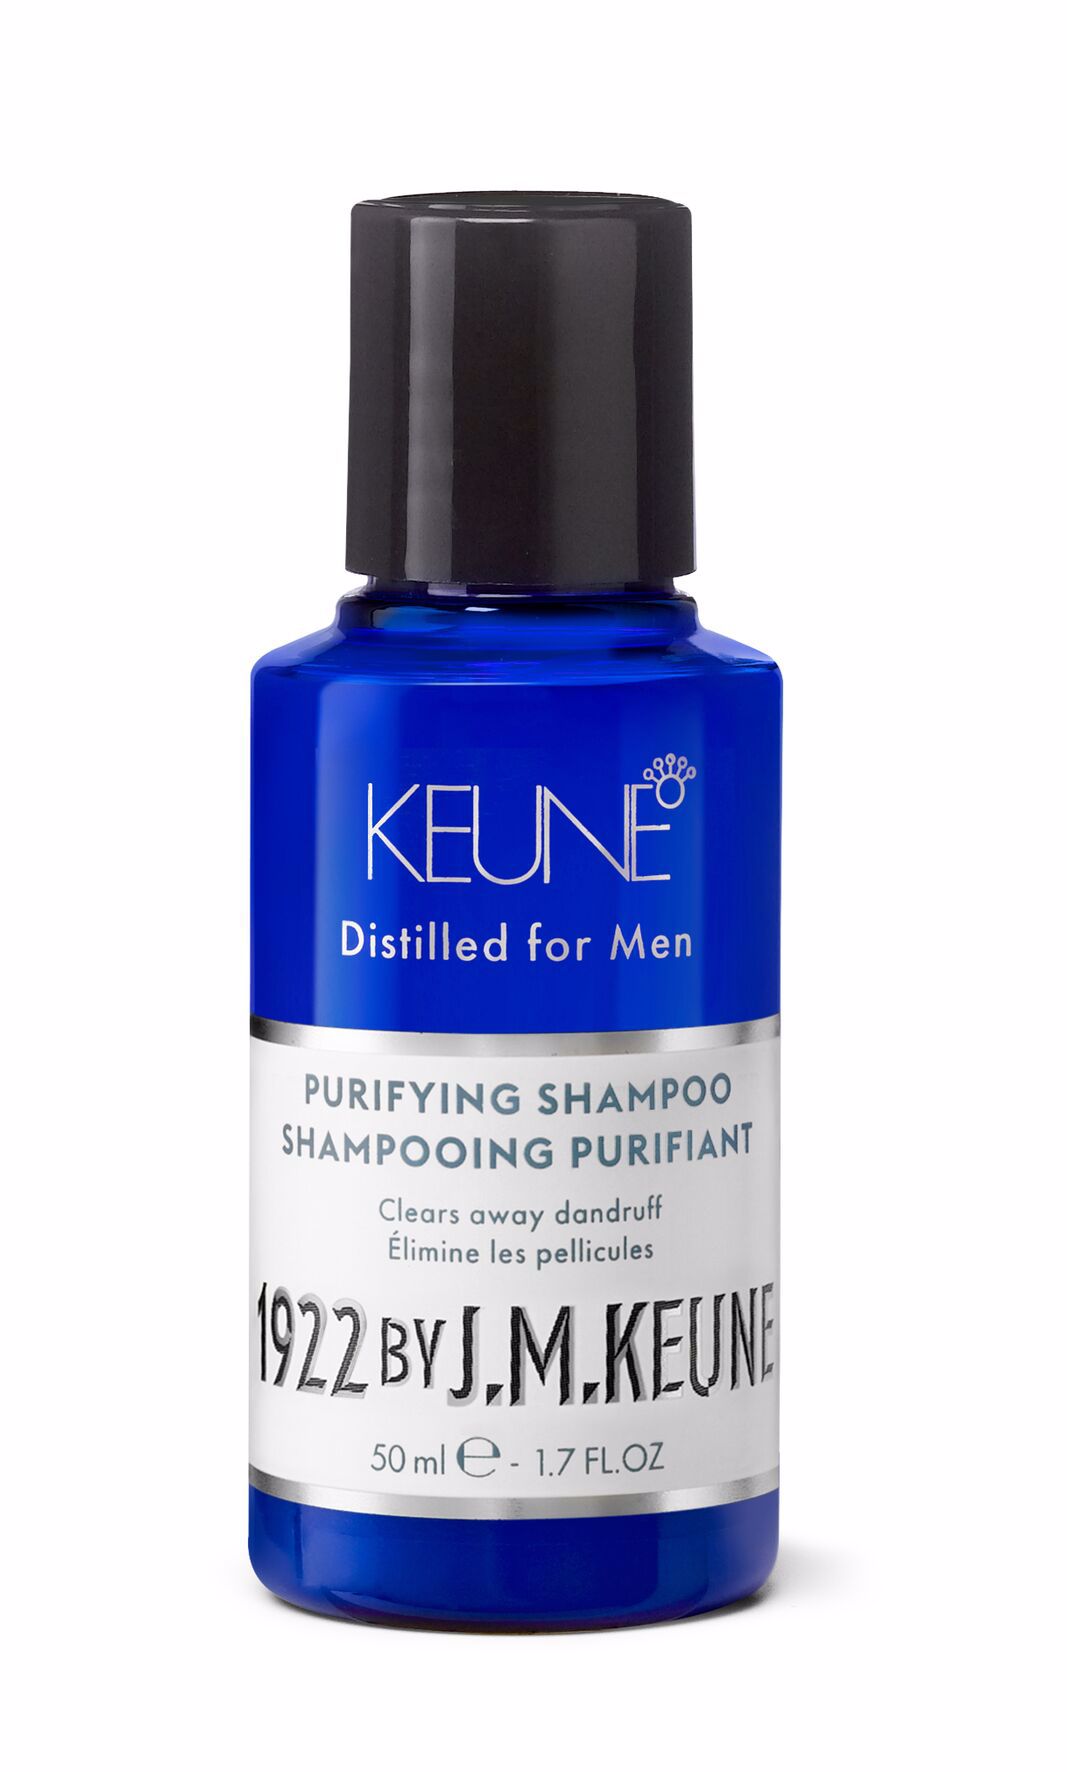 Le Shampooing Purifiant 1922 est la solution contre les cheveux gras chez les hommes. Sans pellicules grâce au pyrithione de zinc, il renforce avec de la créatine. En savoir plus sur keune.ch.